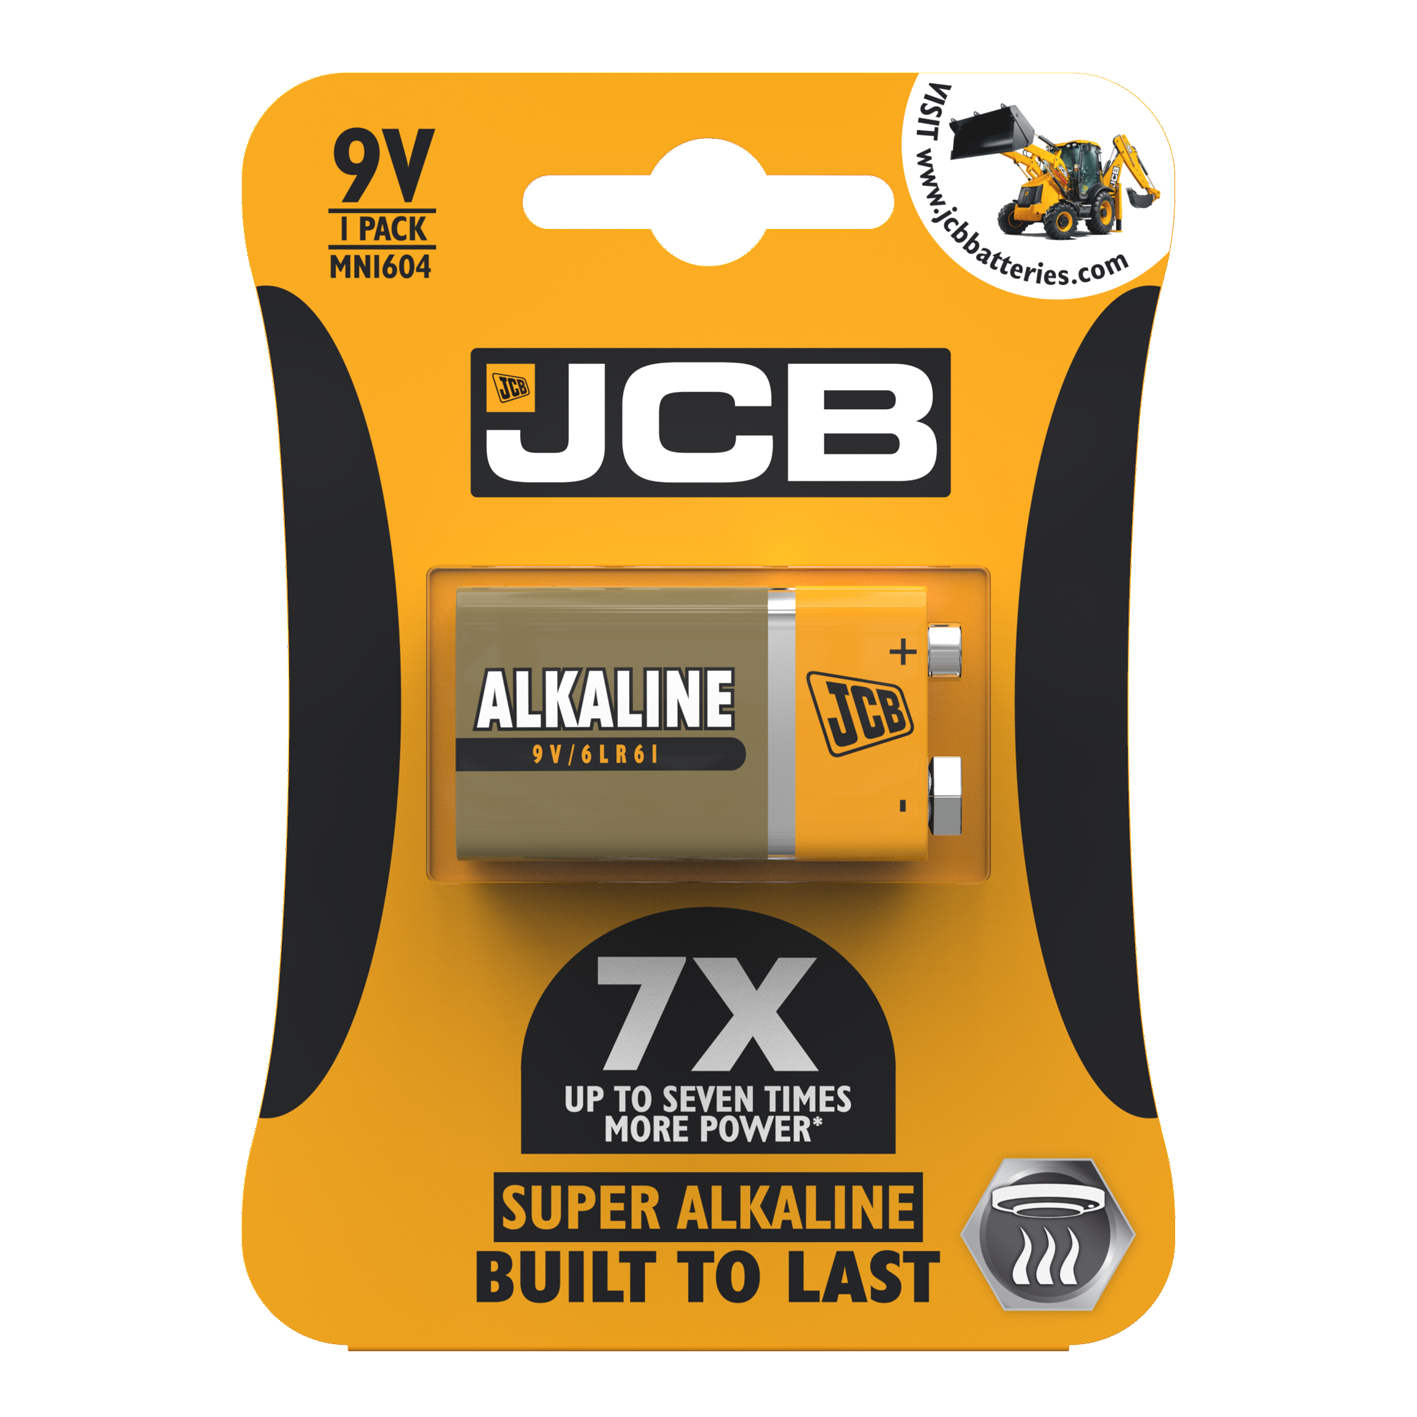 JCB 9V Super Alkaline, Pack of 1